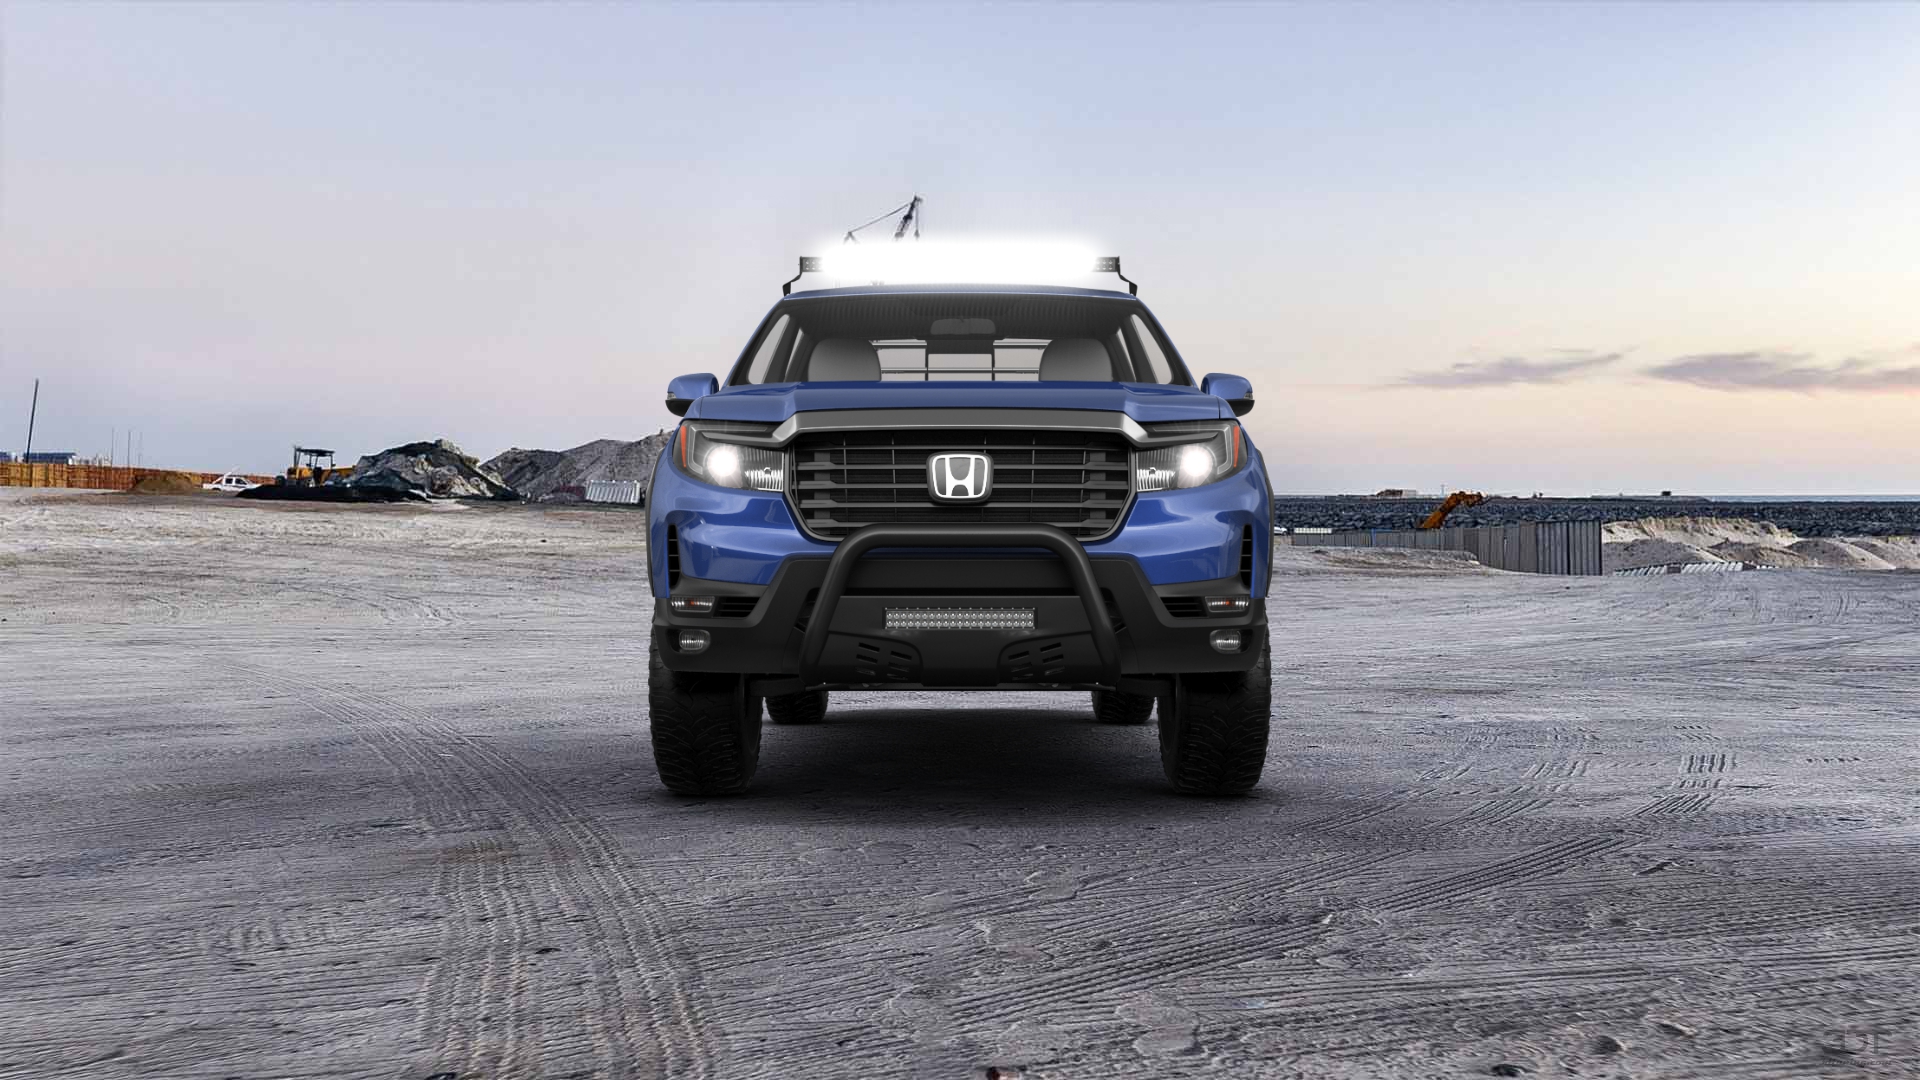 Honda Ridgeline 4 Door pickup truck 2021